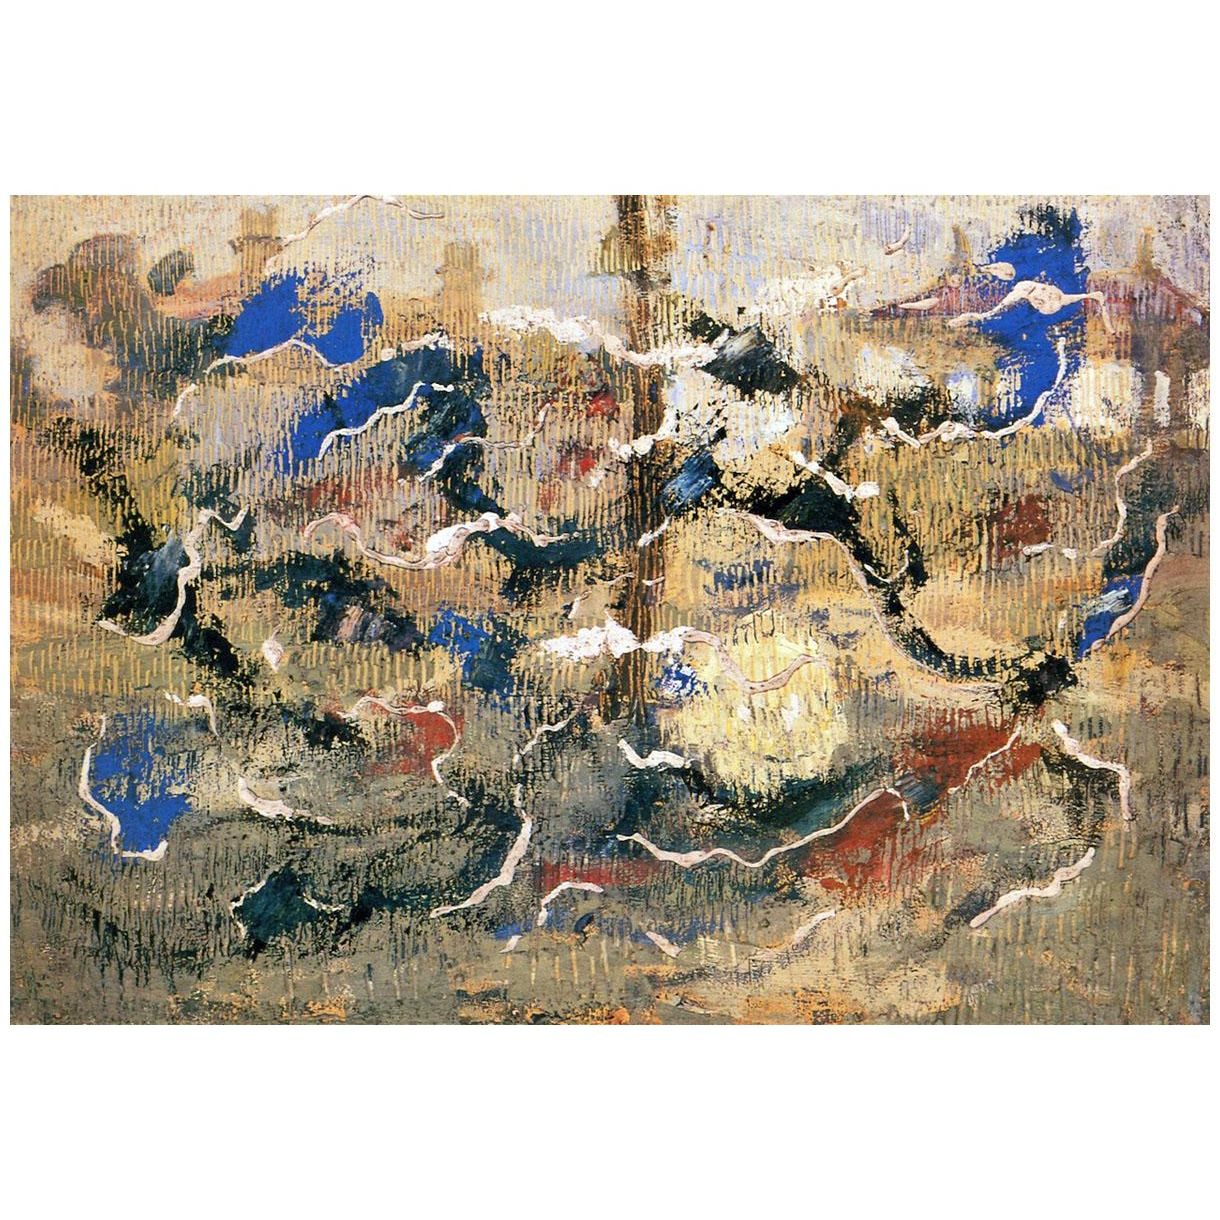 Владимир Баранов-Россине. Абстрактная композиция. 1913